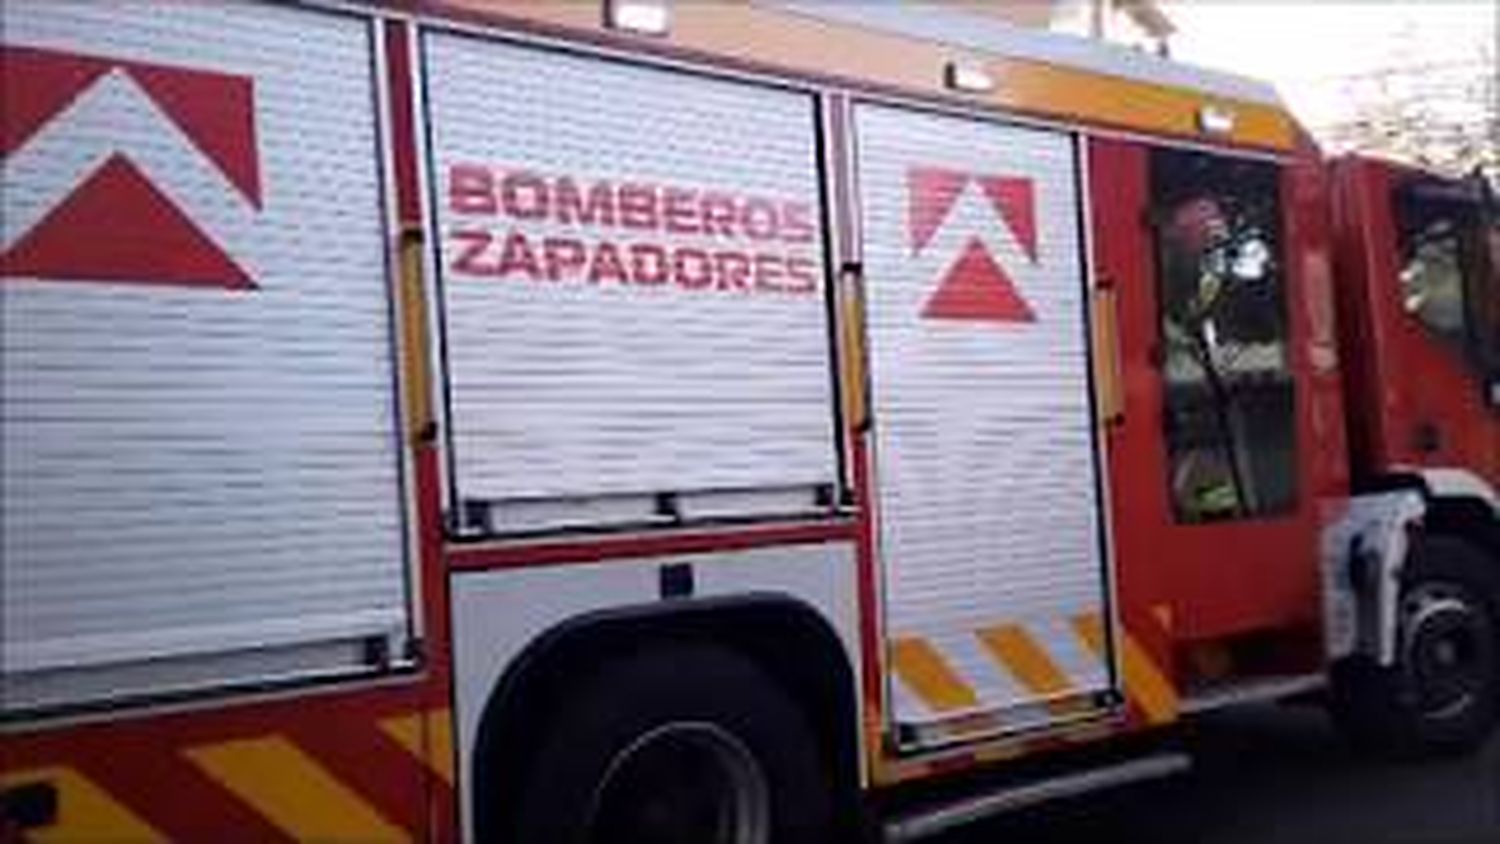 Bomberos lograron controlar y apagar dos incendios en las autopistas Córdoba y Buenos Aires